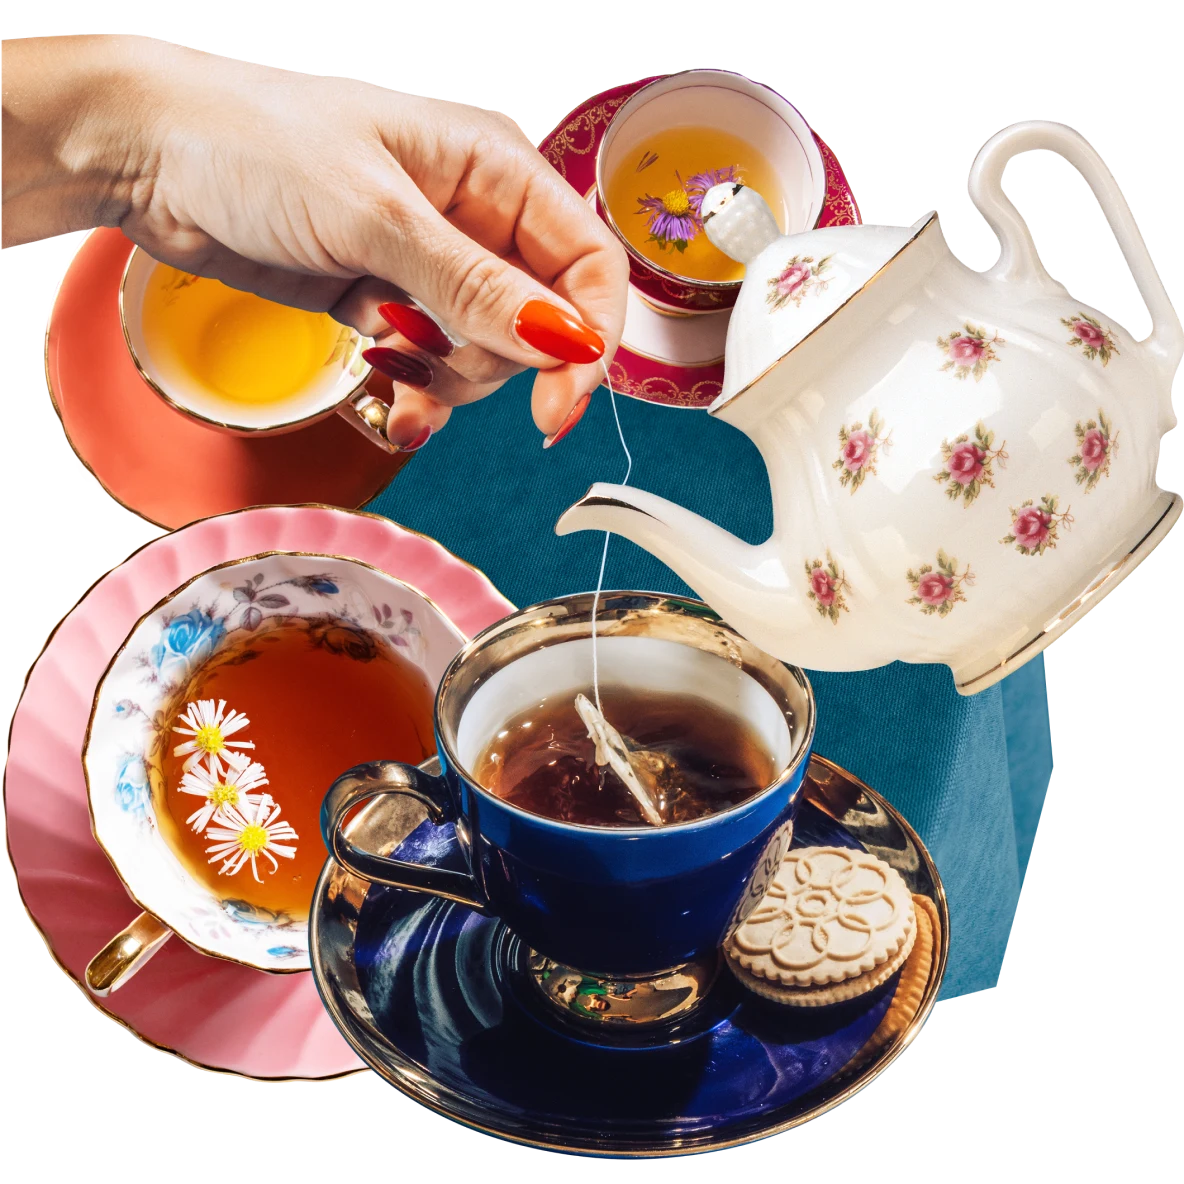 Eine Collage mit Teetassen, die mit Tee in dunklen Bernsteinfarben gefüllt sind. Eine weiße Teekanne mit pinken Rosen neigt sich nach unten. Eine weiße Hand taucht einen Teebeutel in eine dunkelblaue Tasse, die mit Tee gefüllt ist.